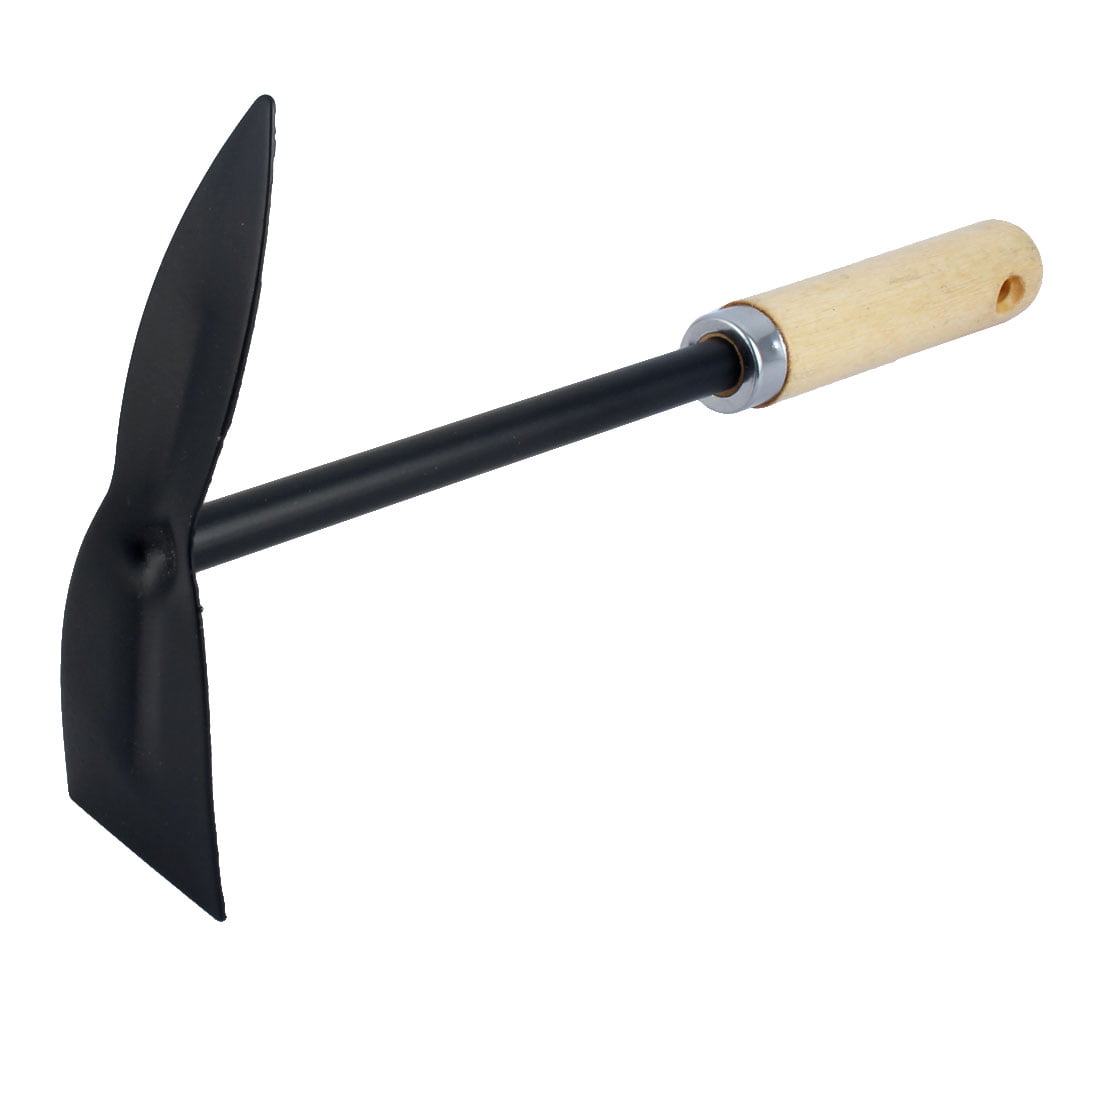 Uxcell 12.4" Length Nonslip Wood Handle Metal Hand Garden Digging Hoe